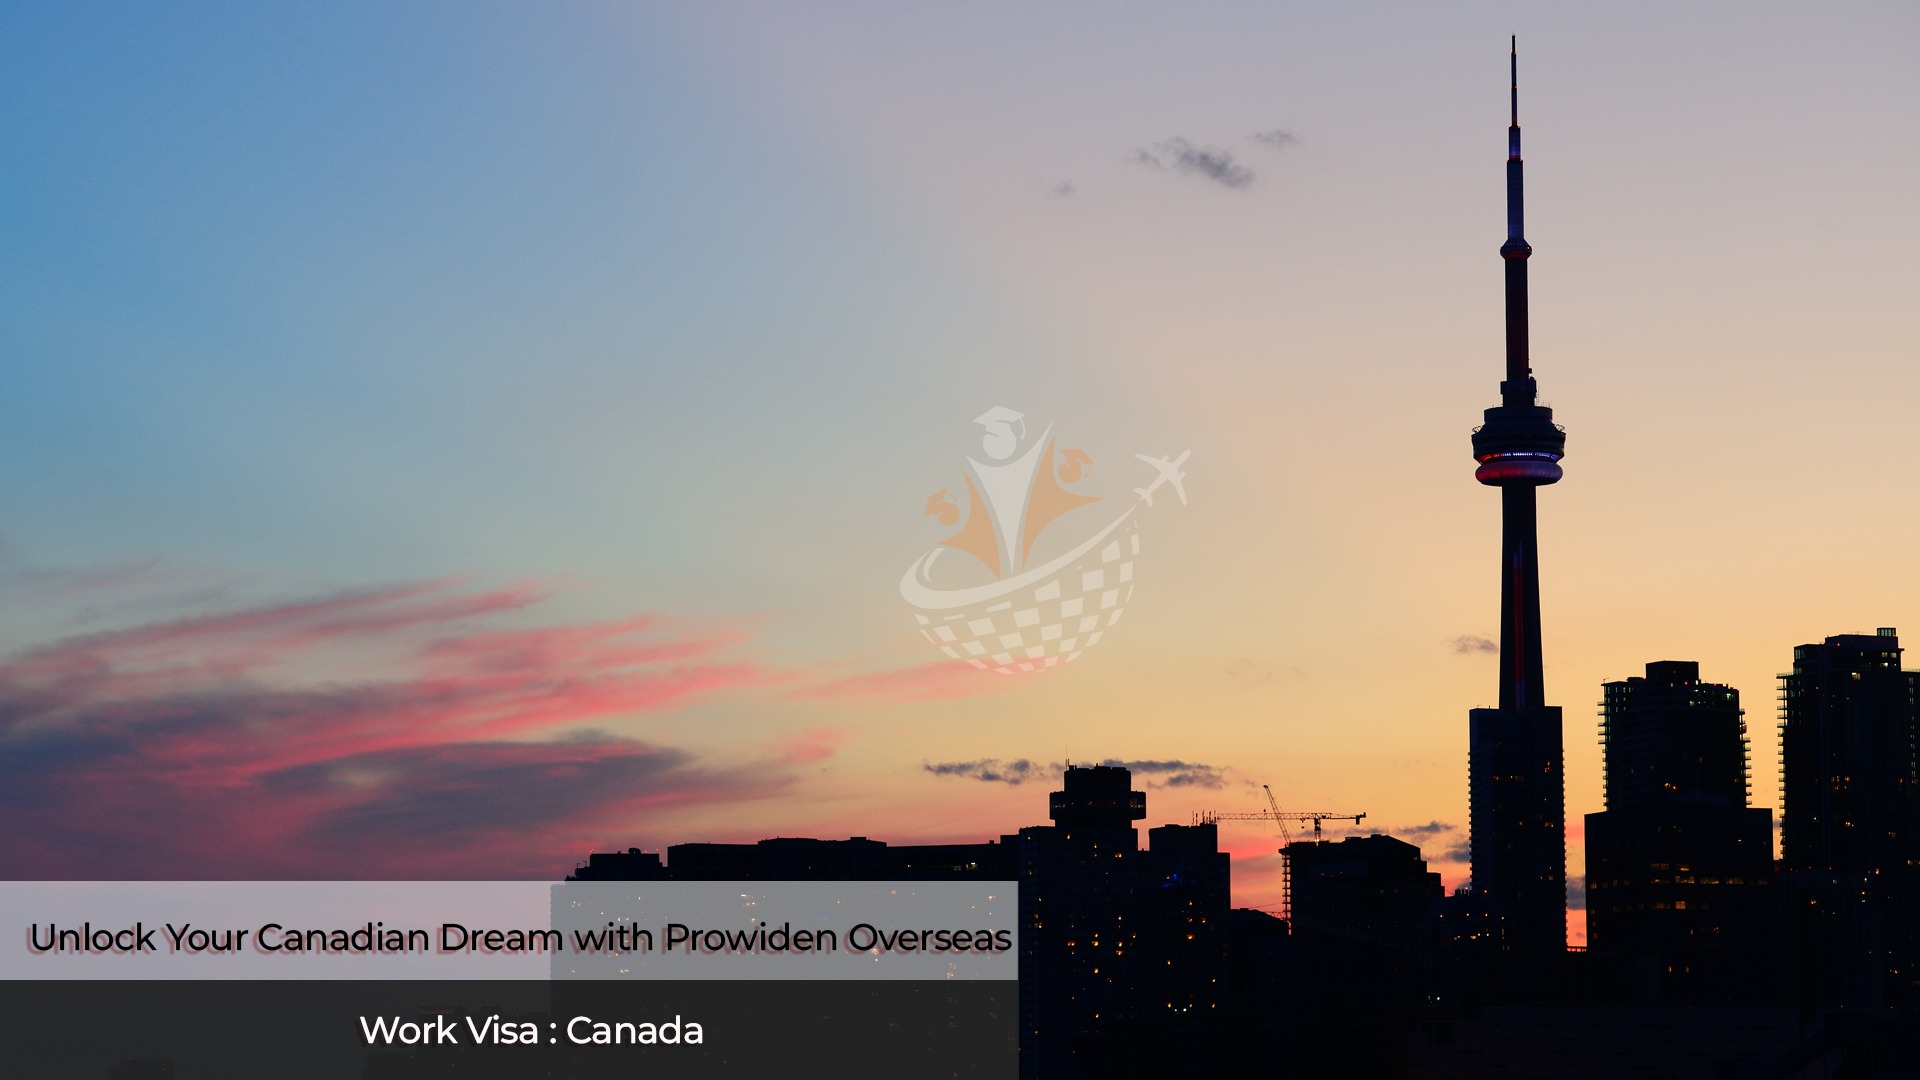 Canadian Work Visa, Work Visa Canada, Prowiden Overseas